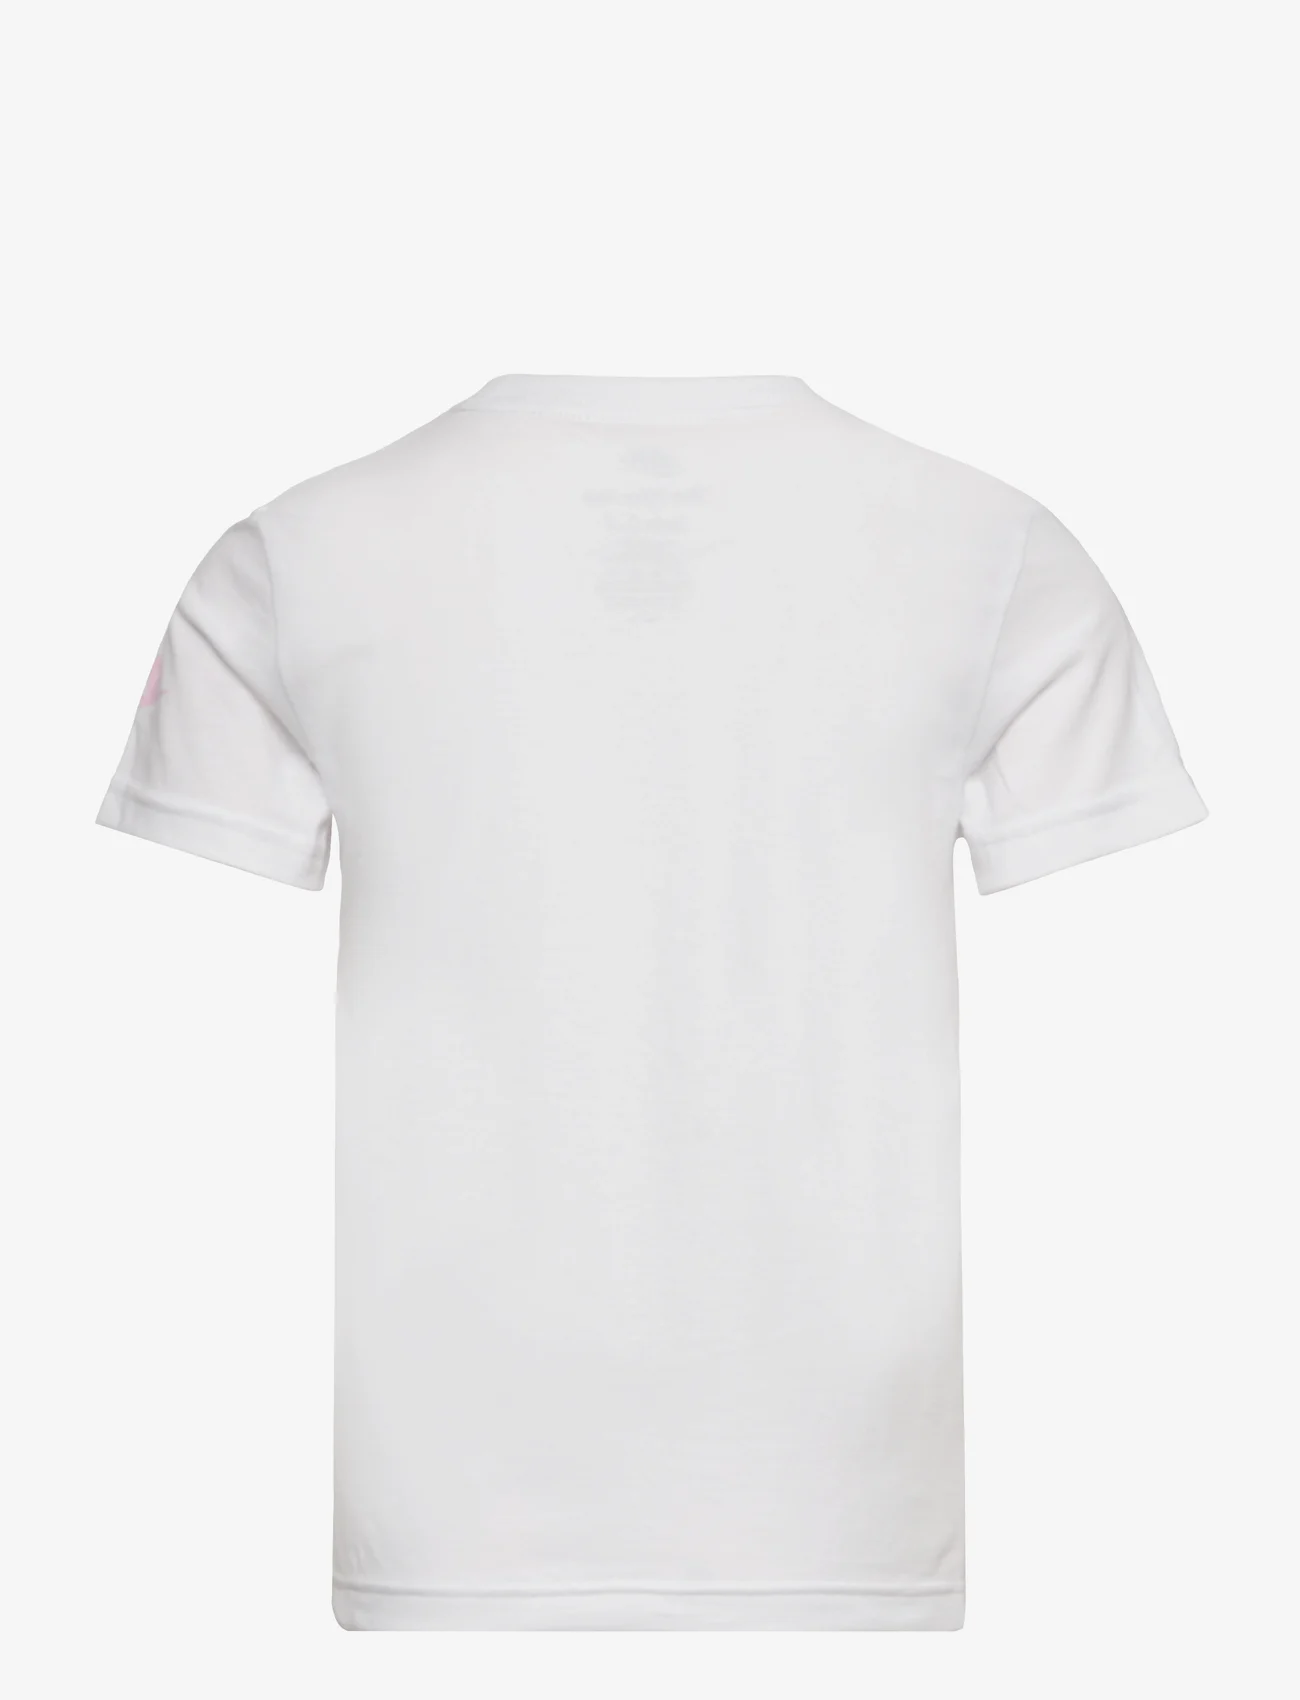 Nike - NKB FUTURA MICRO TEXT TEE / NKB FUTURA MICRO TEXT TEE - kortærmede t-shirts - white - 1